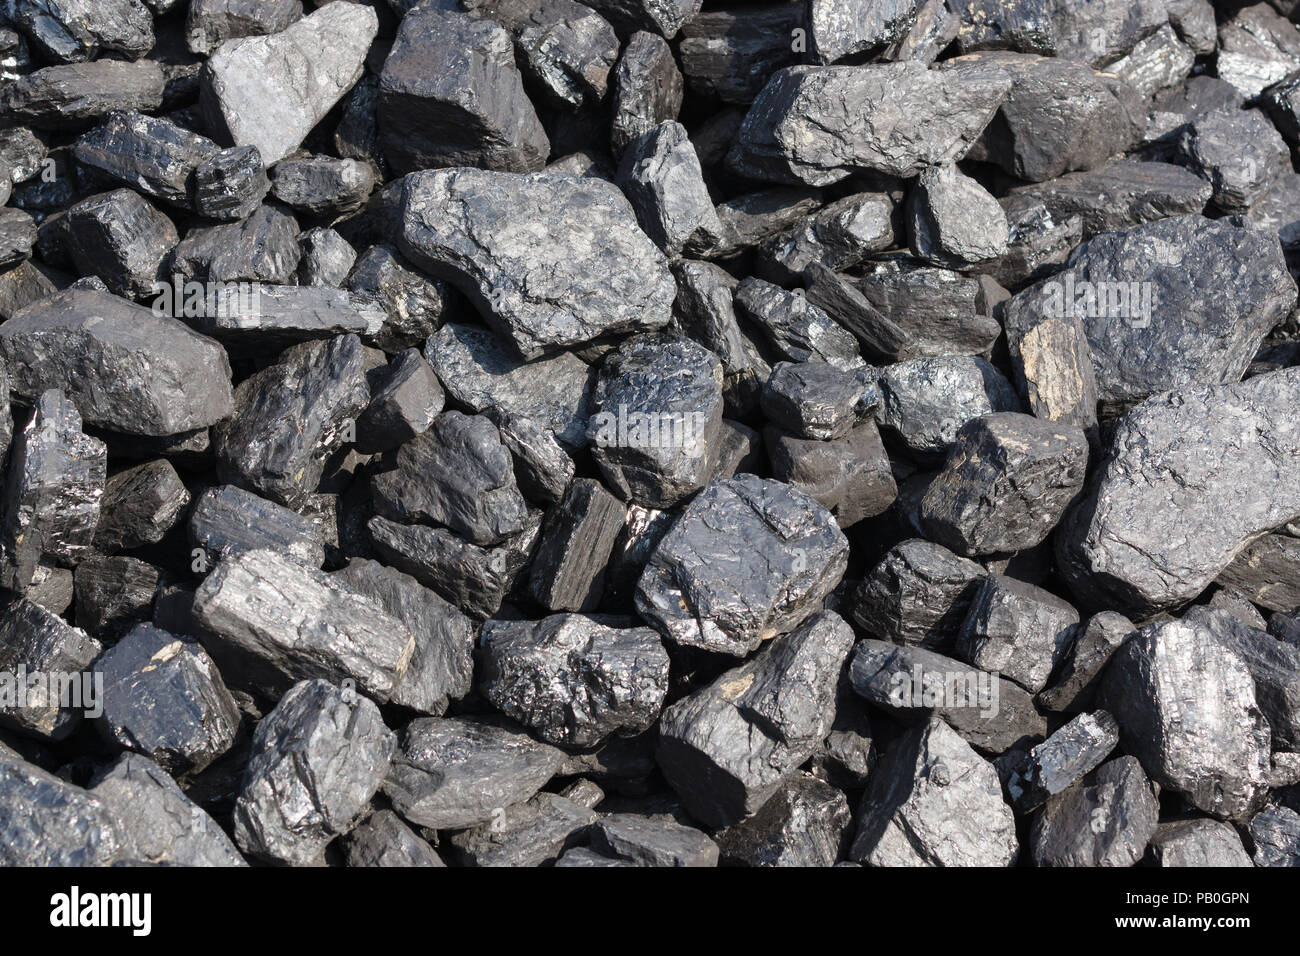 Le charbon bitumineux source d'énergie renouvelable non formé sur des millions d'années et largement utilisé dans l'industrie et de chauffage Banque D'Images